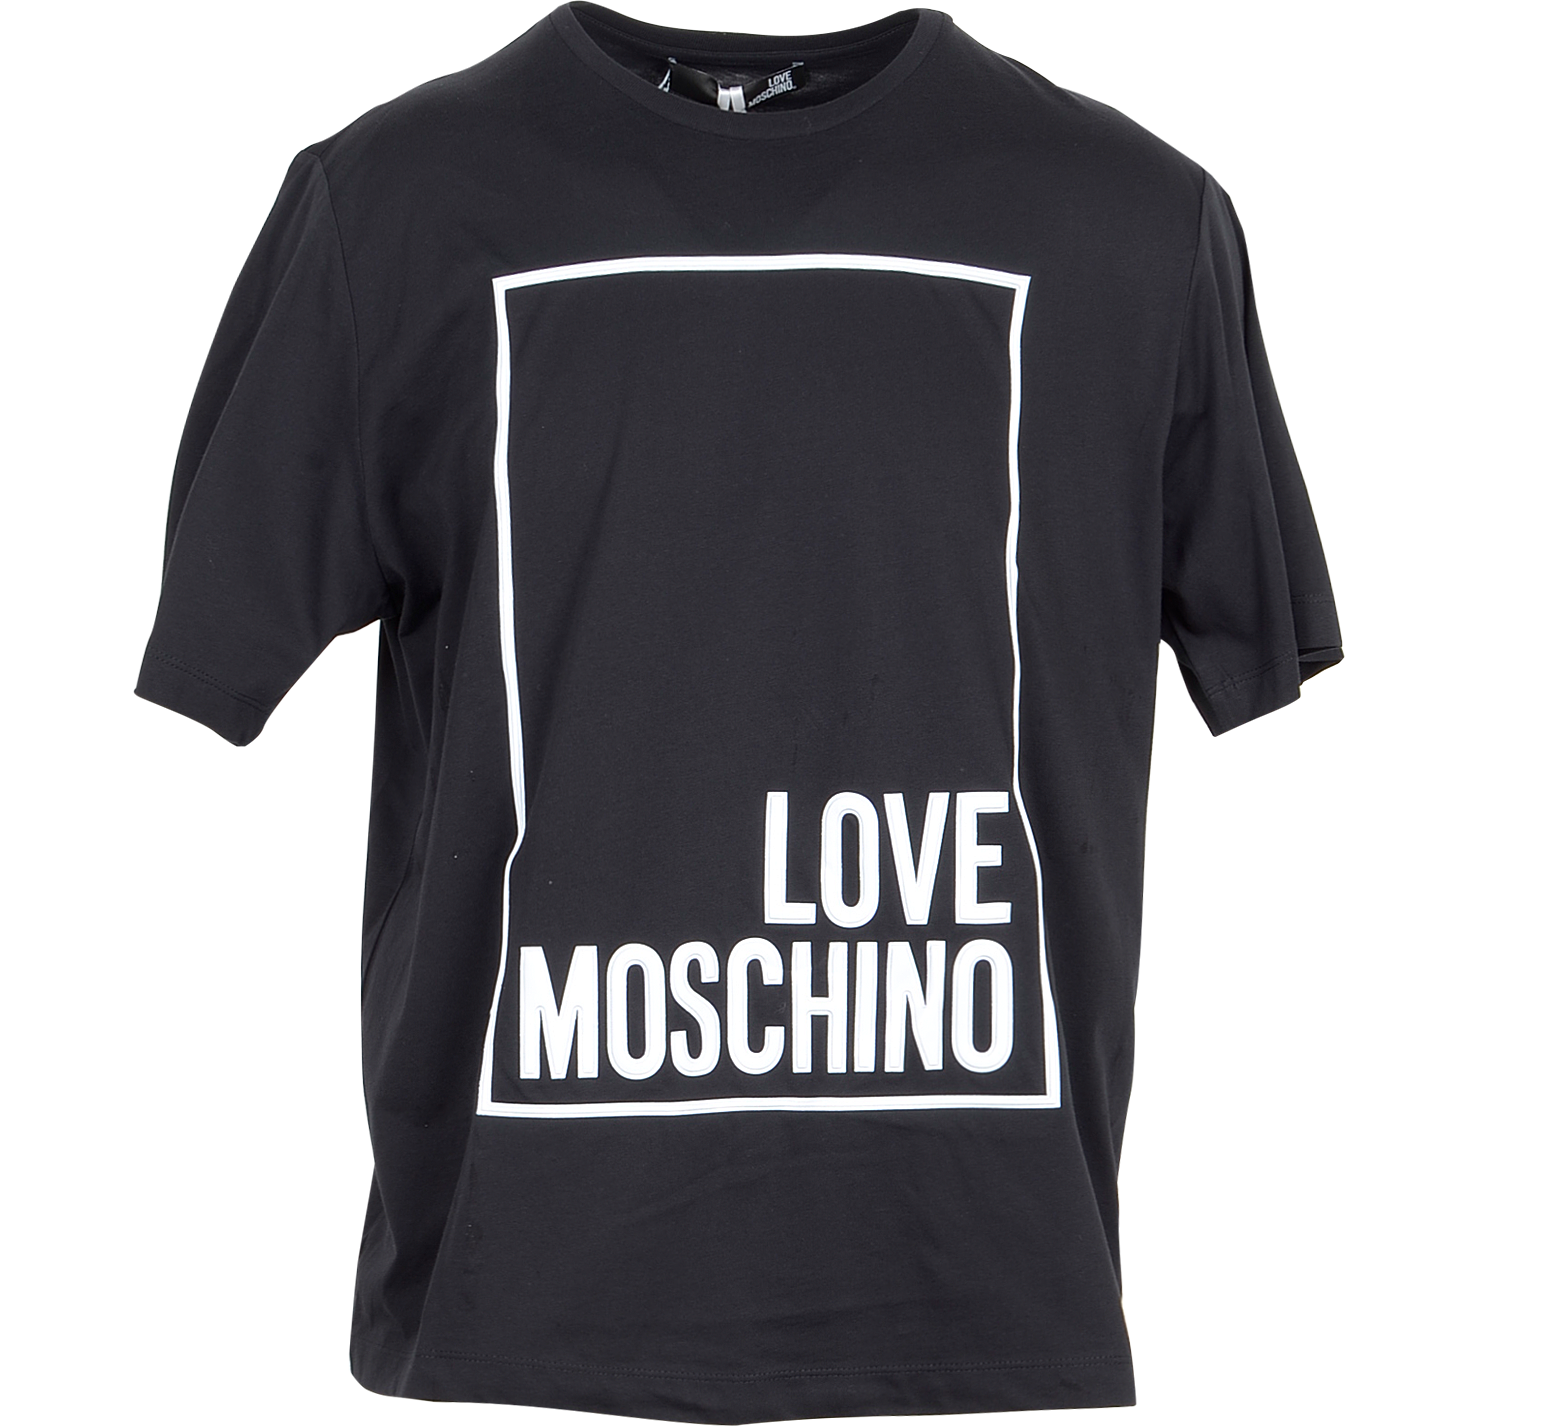 moschino black shirt